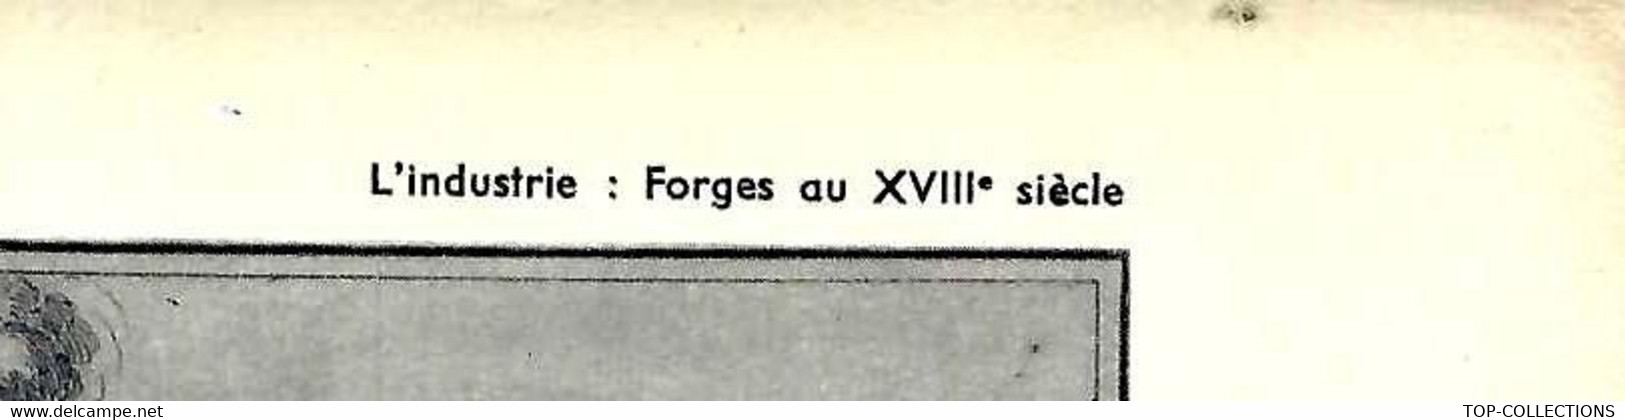 INDUSTRIE DES FORGES AU XVIII° SIECLE OUTIL PEDAGOGIQUE HACHETTE 1954  B.E.V.SCANS - Collections